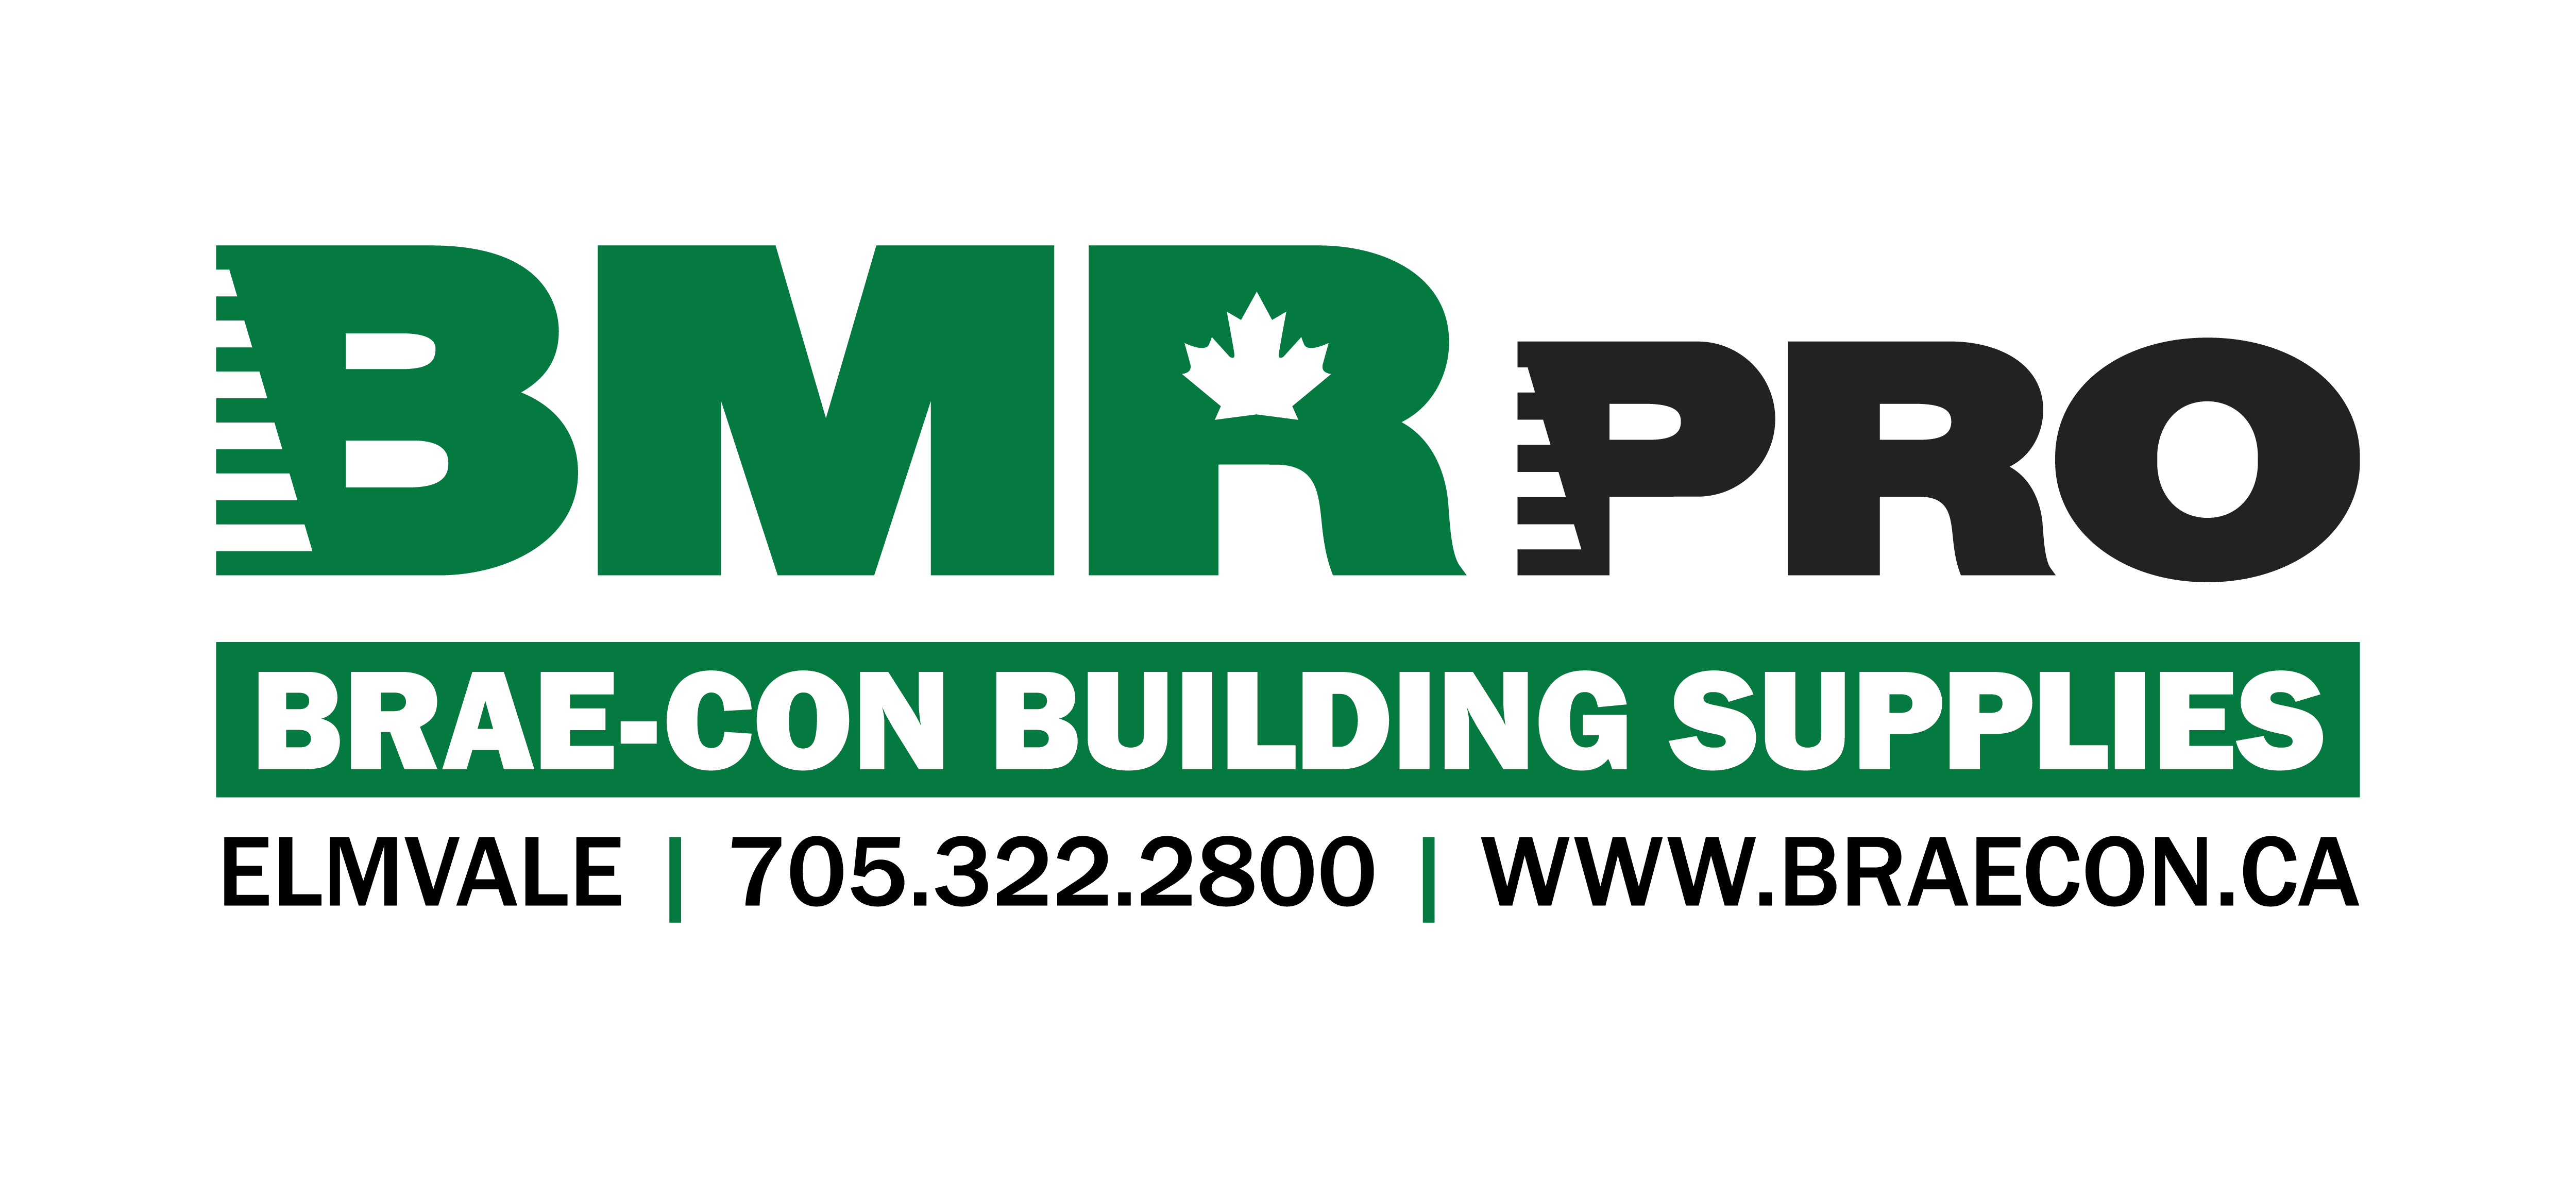 BMR Pro Brae-Con Building Supplies